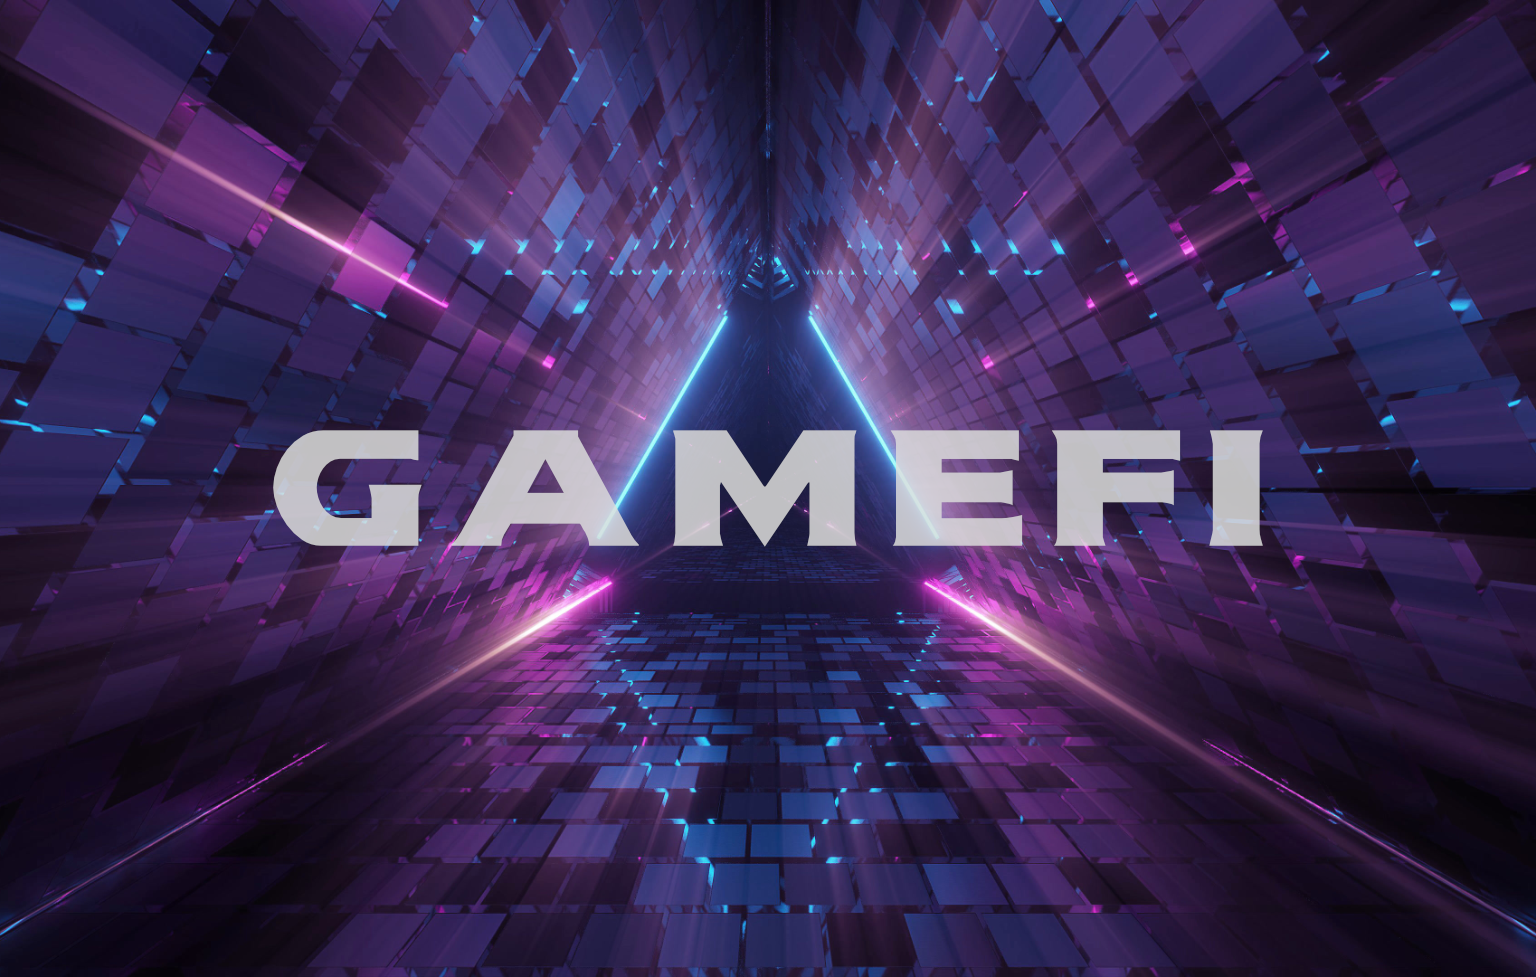 มาดูกันว่า GameFi คืออะไร? แตกต่างจากการเล่นเกมรูปแบบปกติอย่างไรบ้าง?